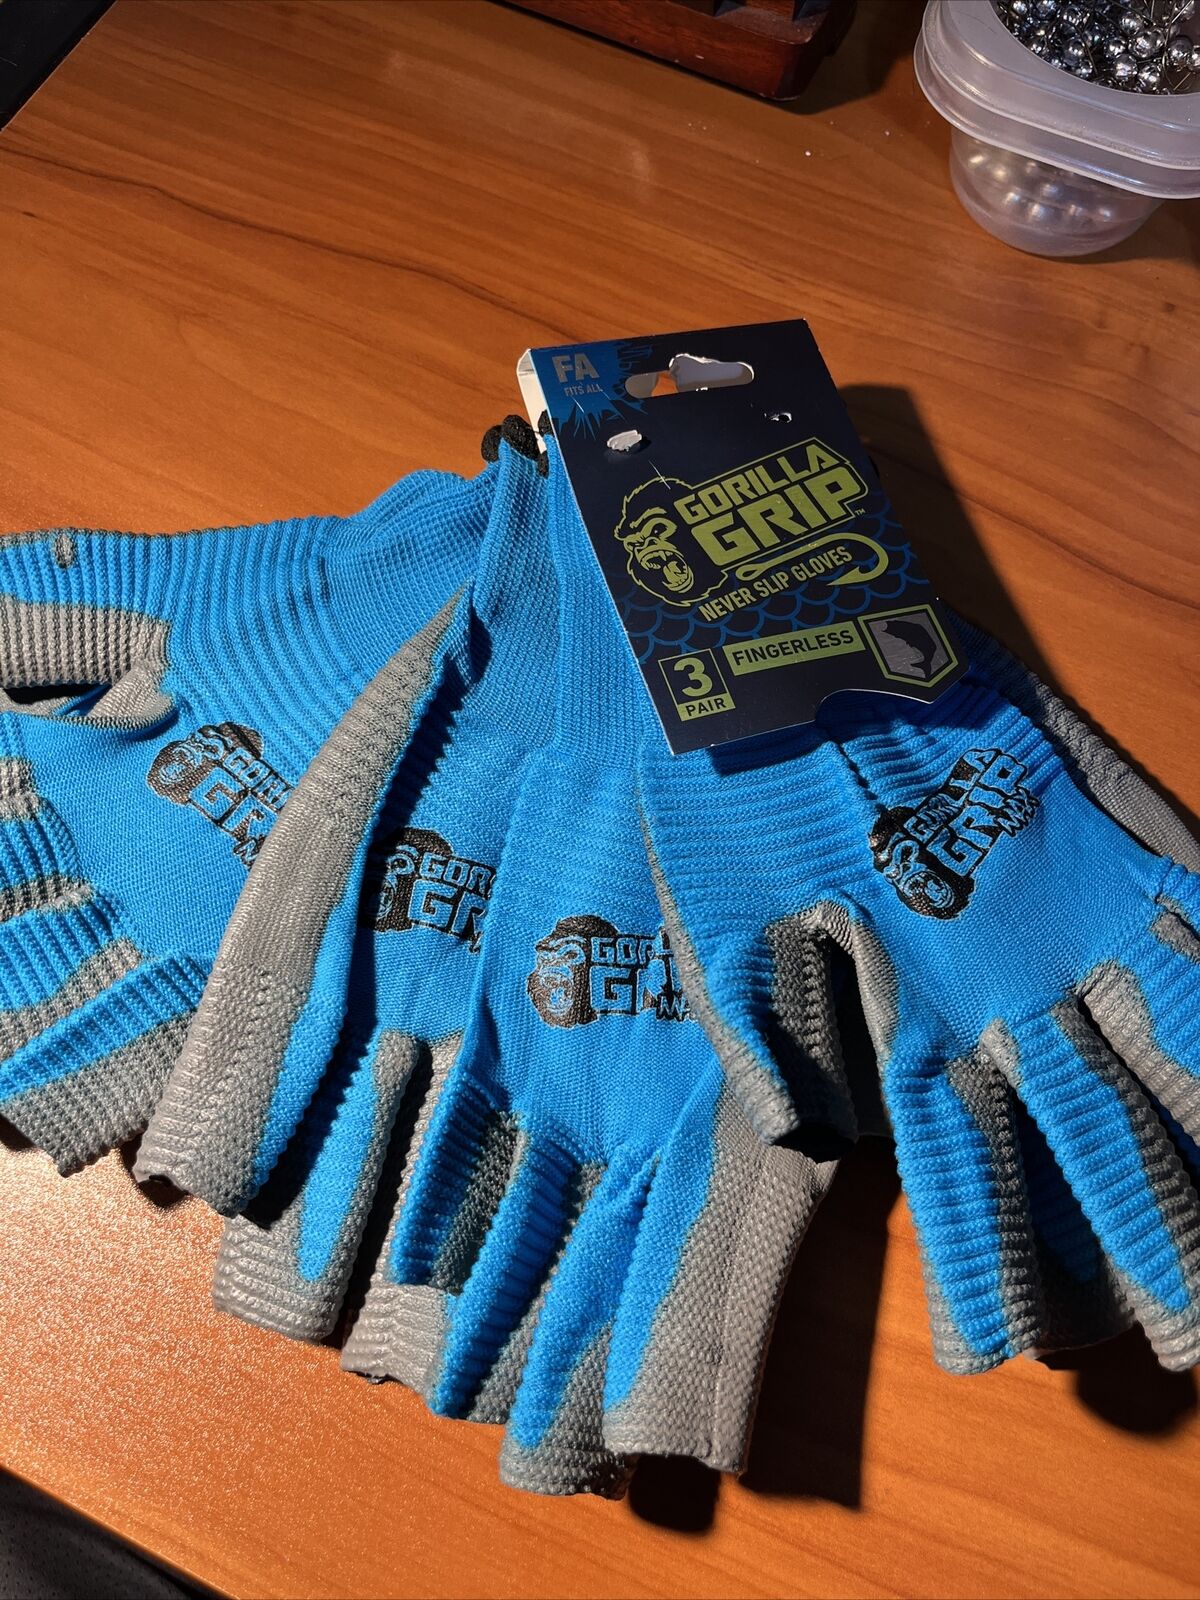 Gorilla Grip Fingerless Never Slip Gloves 3 Pair One Size Fits All Fishing Blue